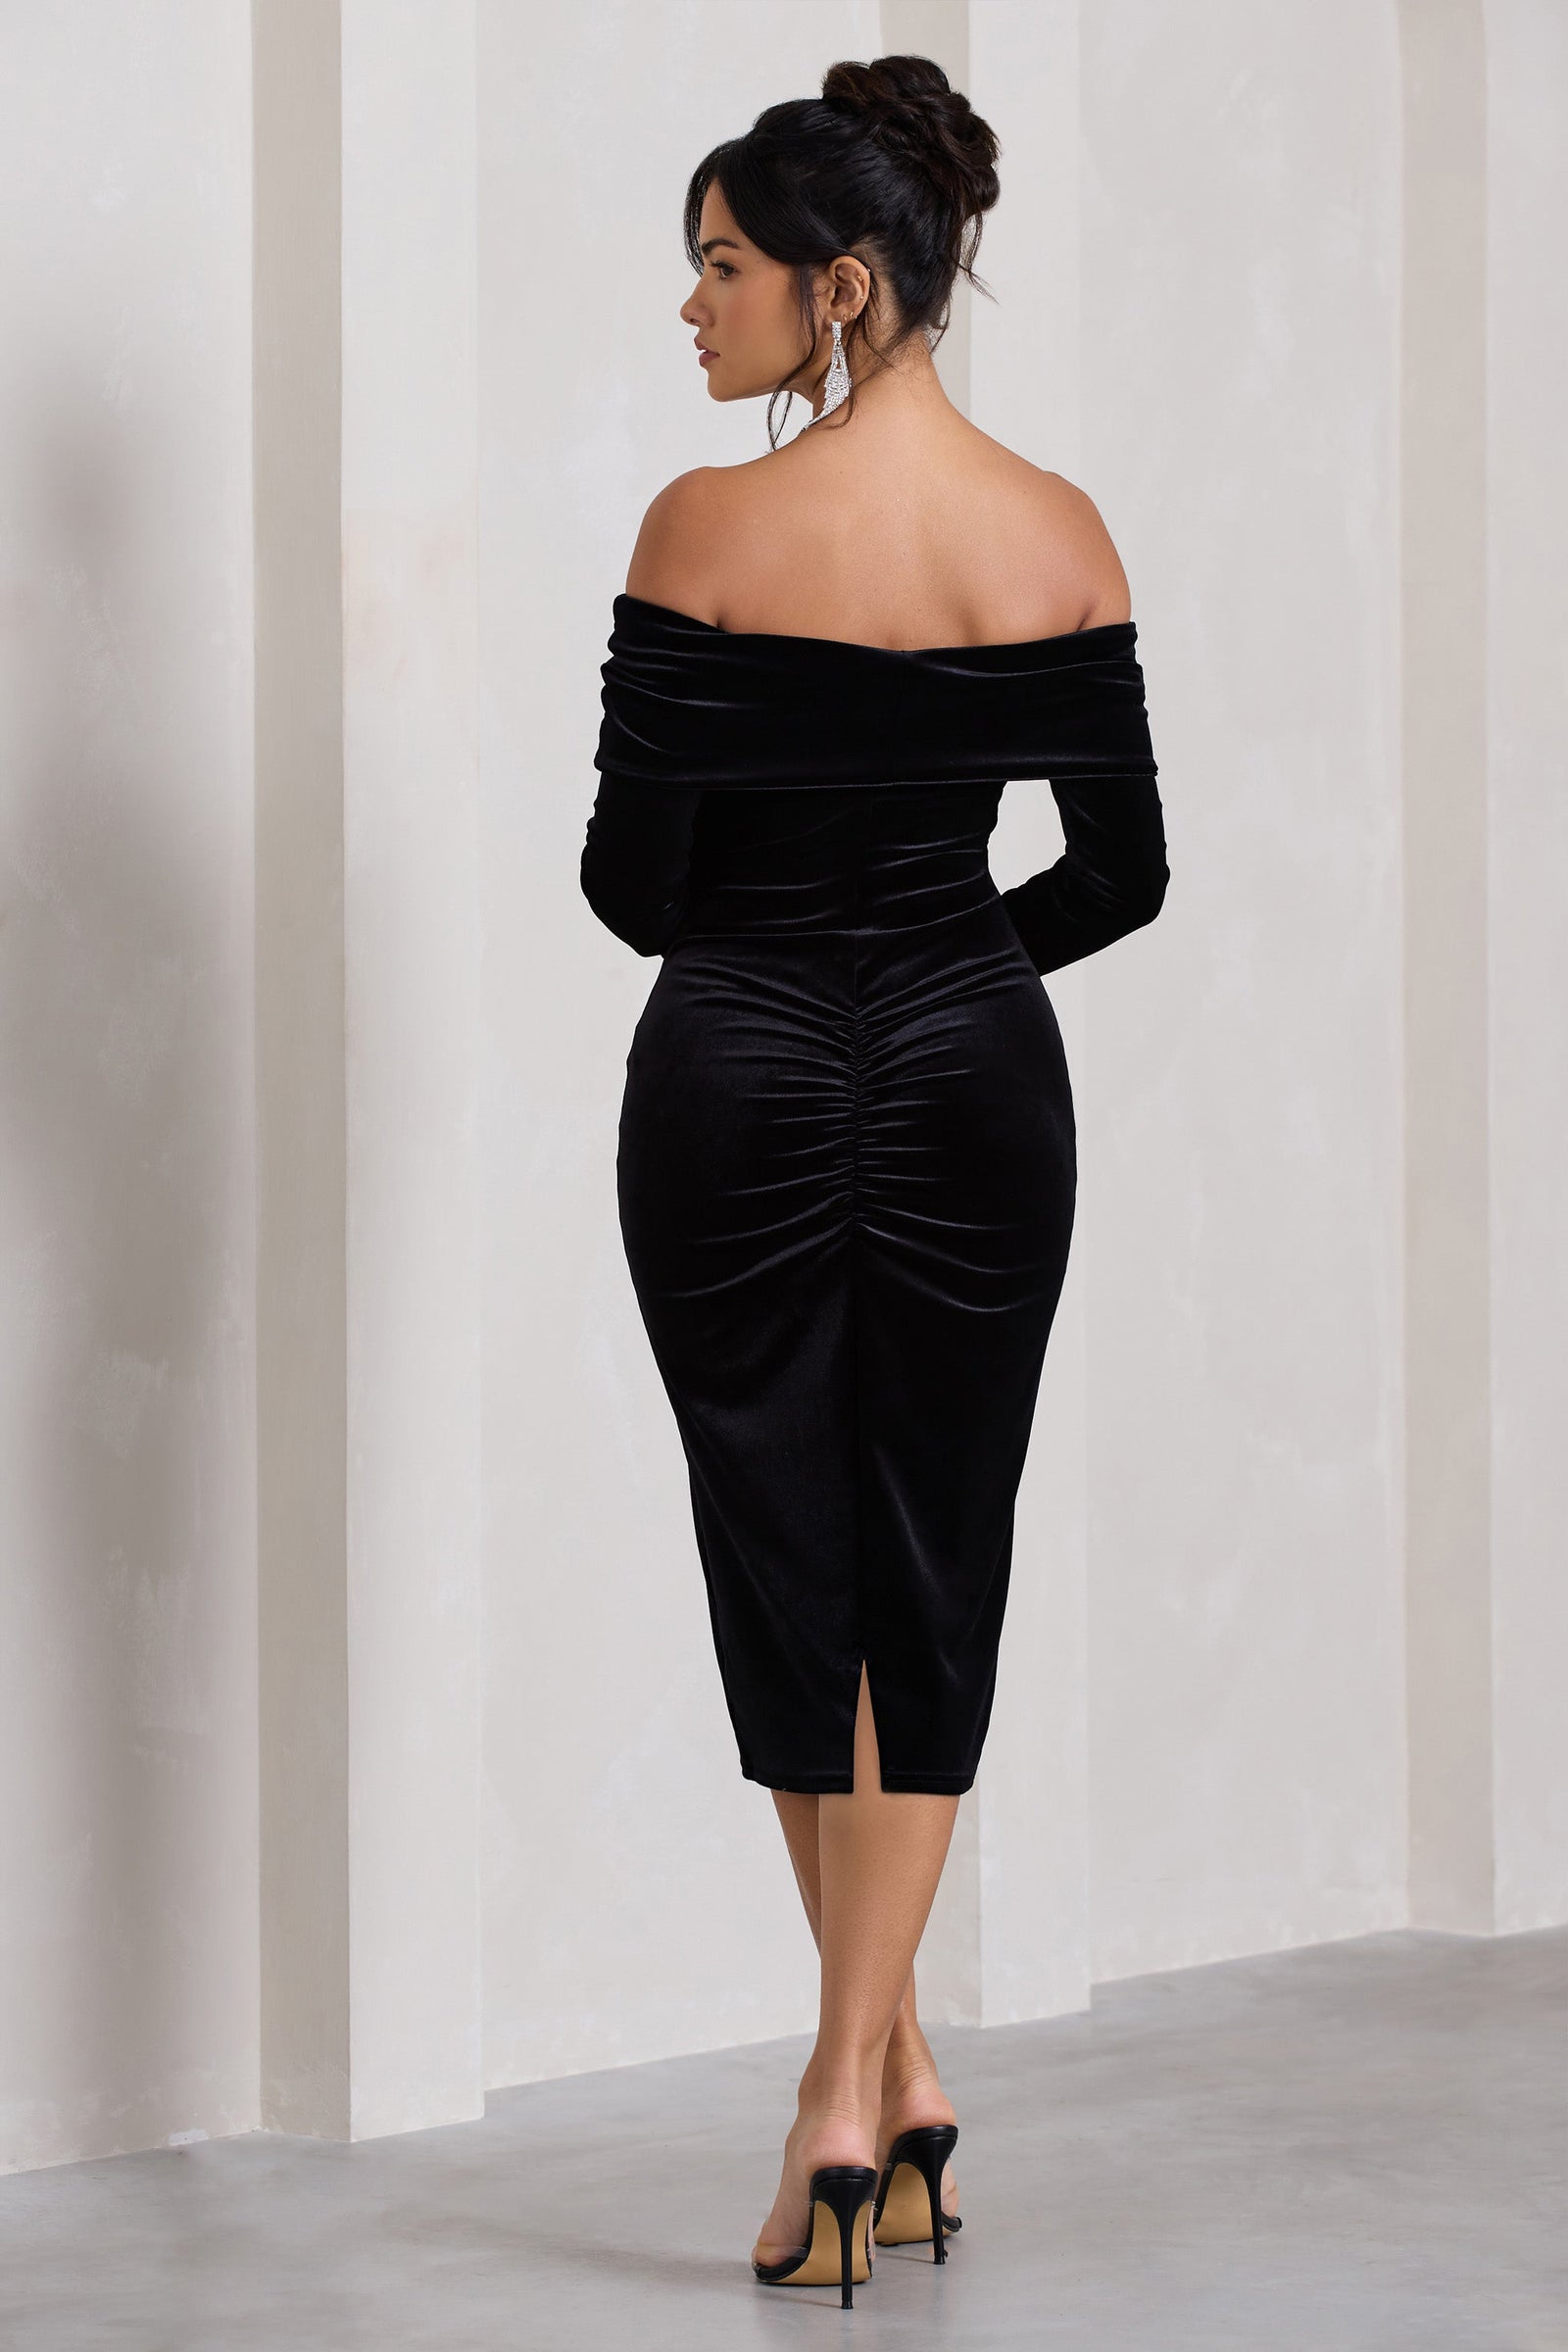 Law of Attraction Black Bardot Draped Split Maxi Dress – Club L